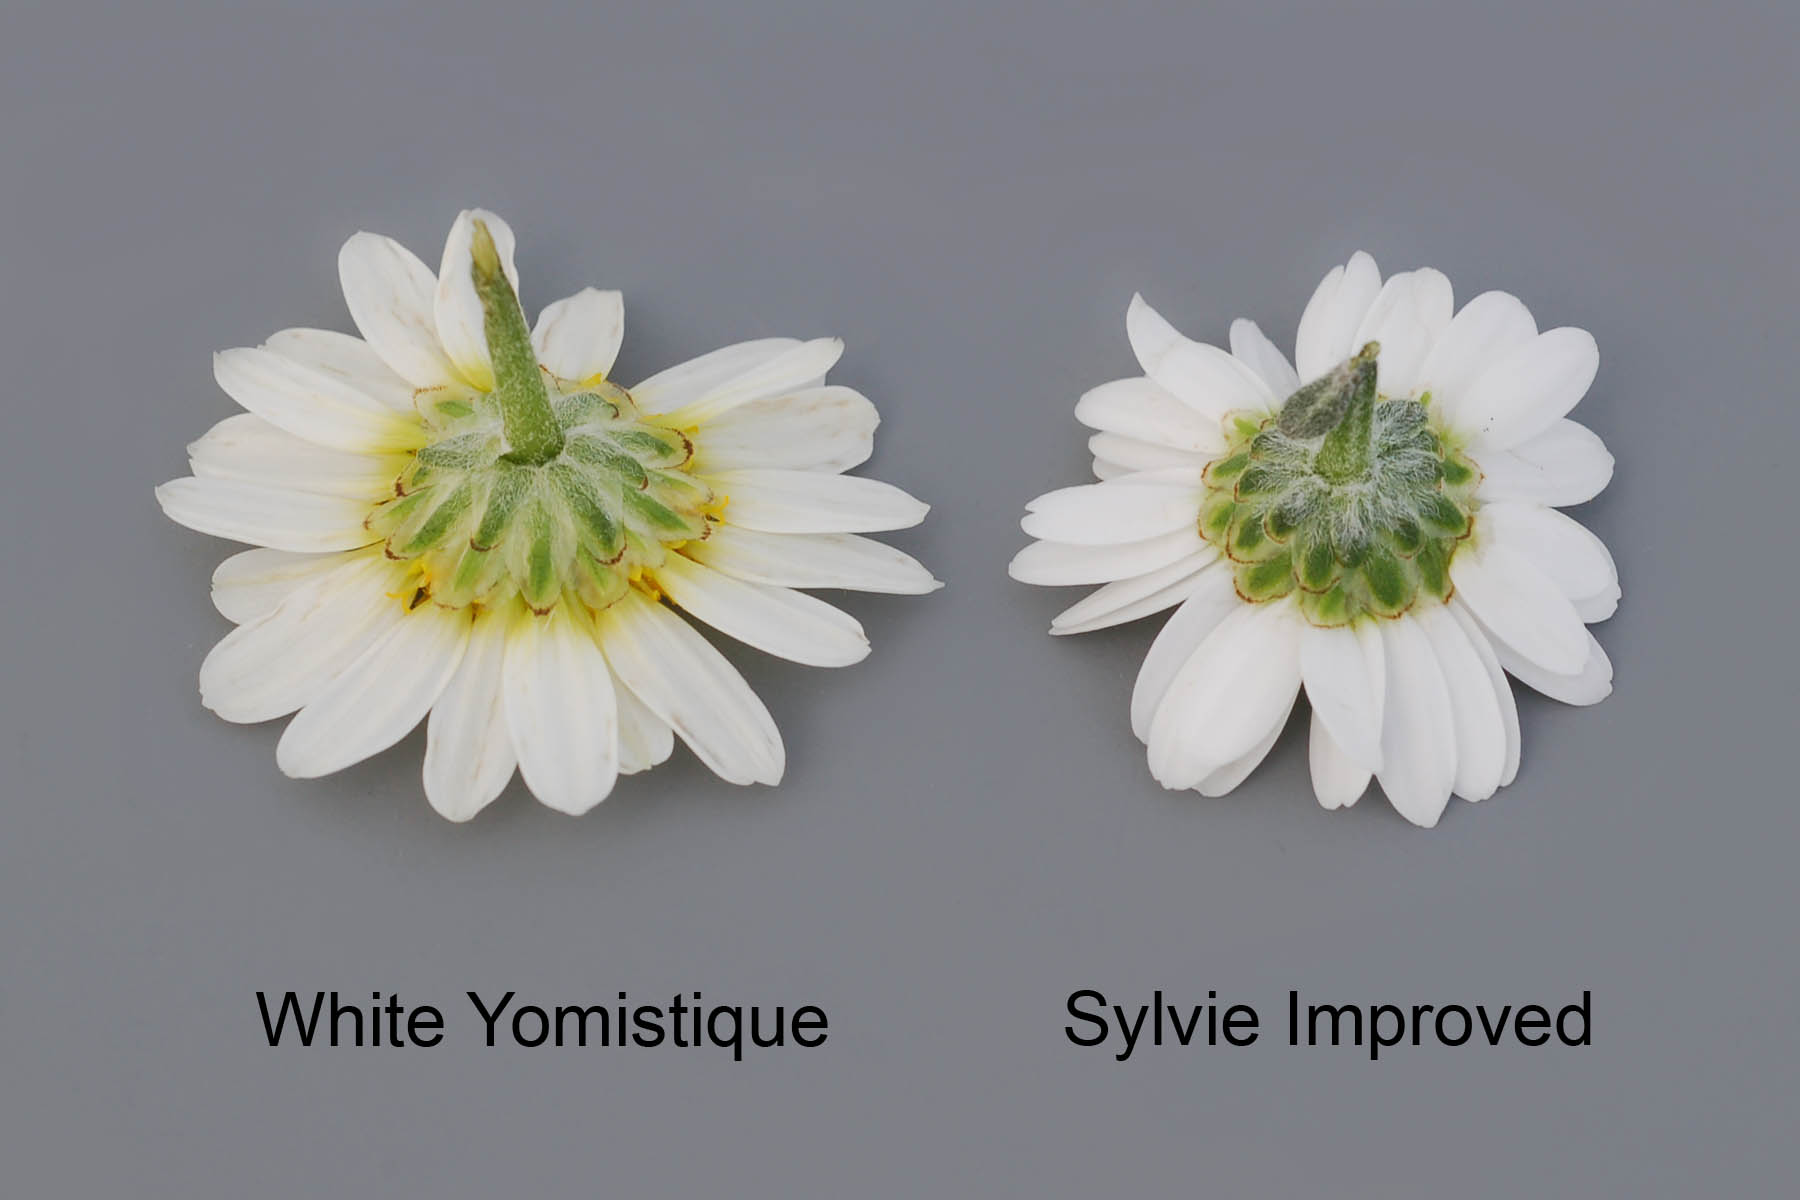 White Yomistique